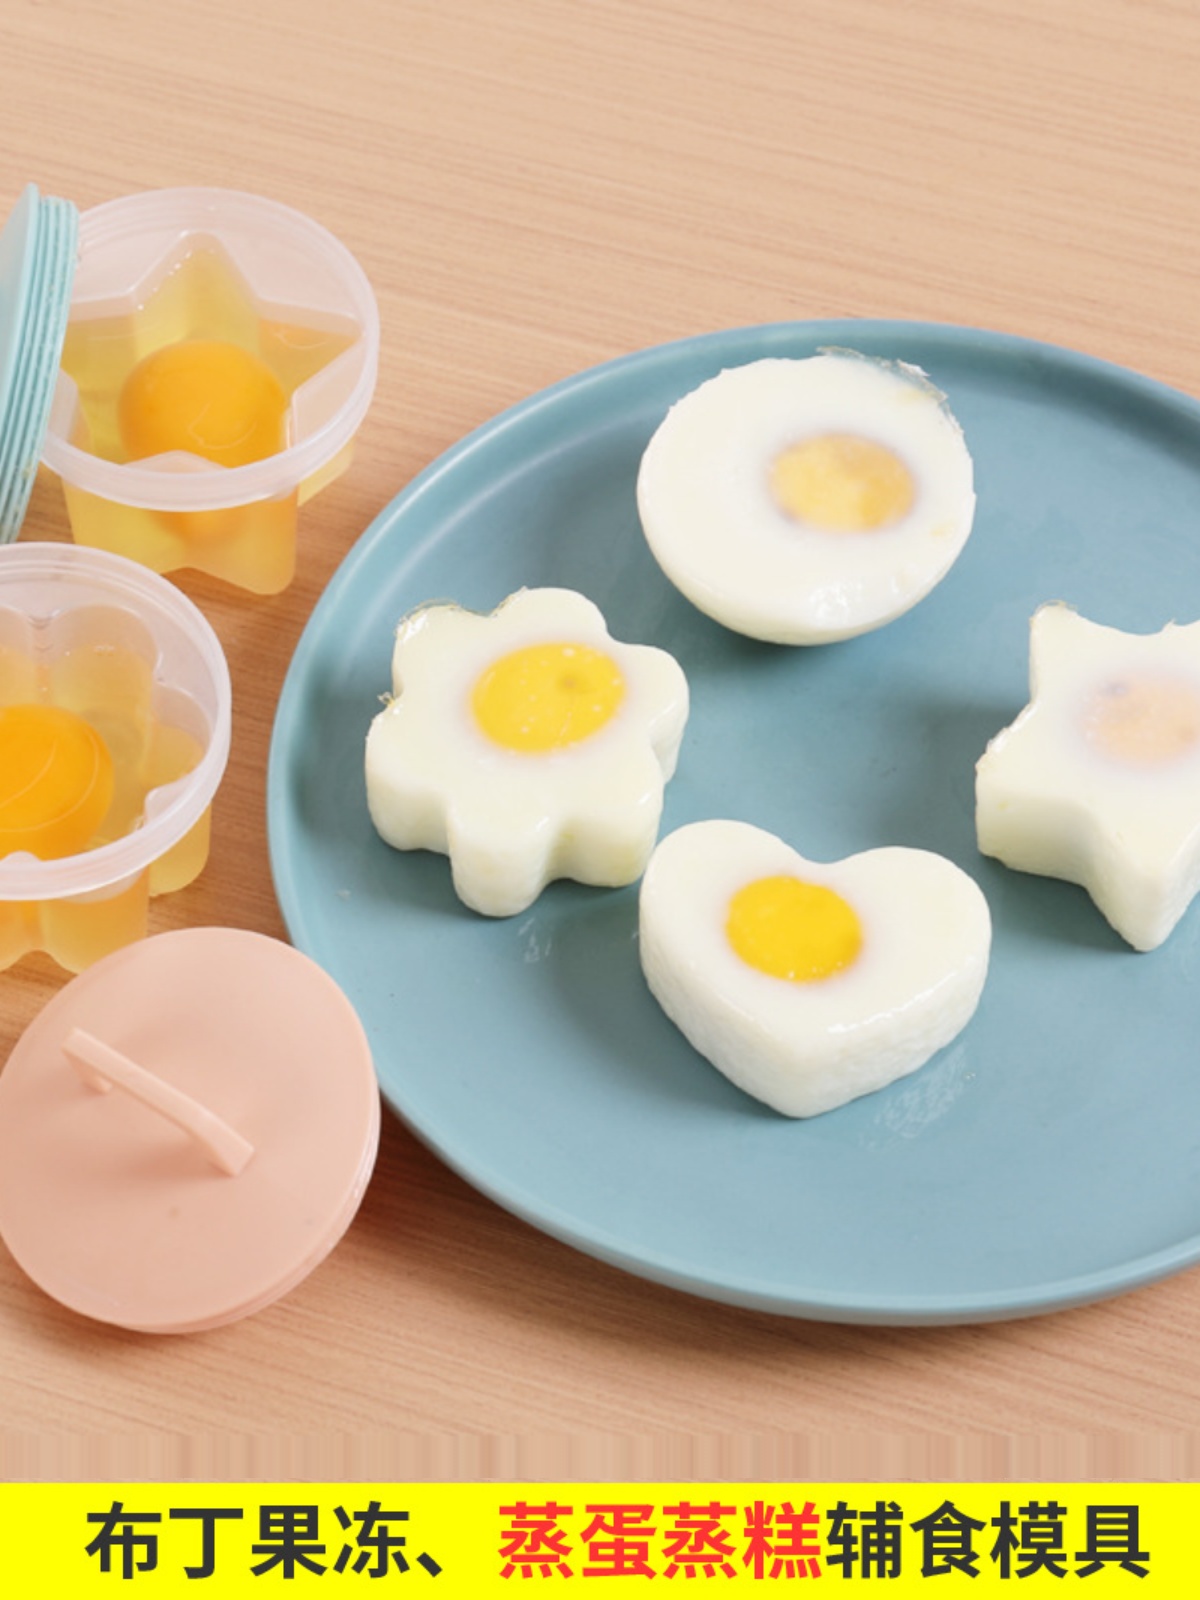 爱心煮蛋器焦糖布丁蒸蛋器儿童宝宝辅食蒸糕早餐凉粉蛋糕果冻模具